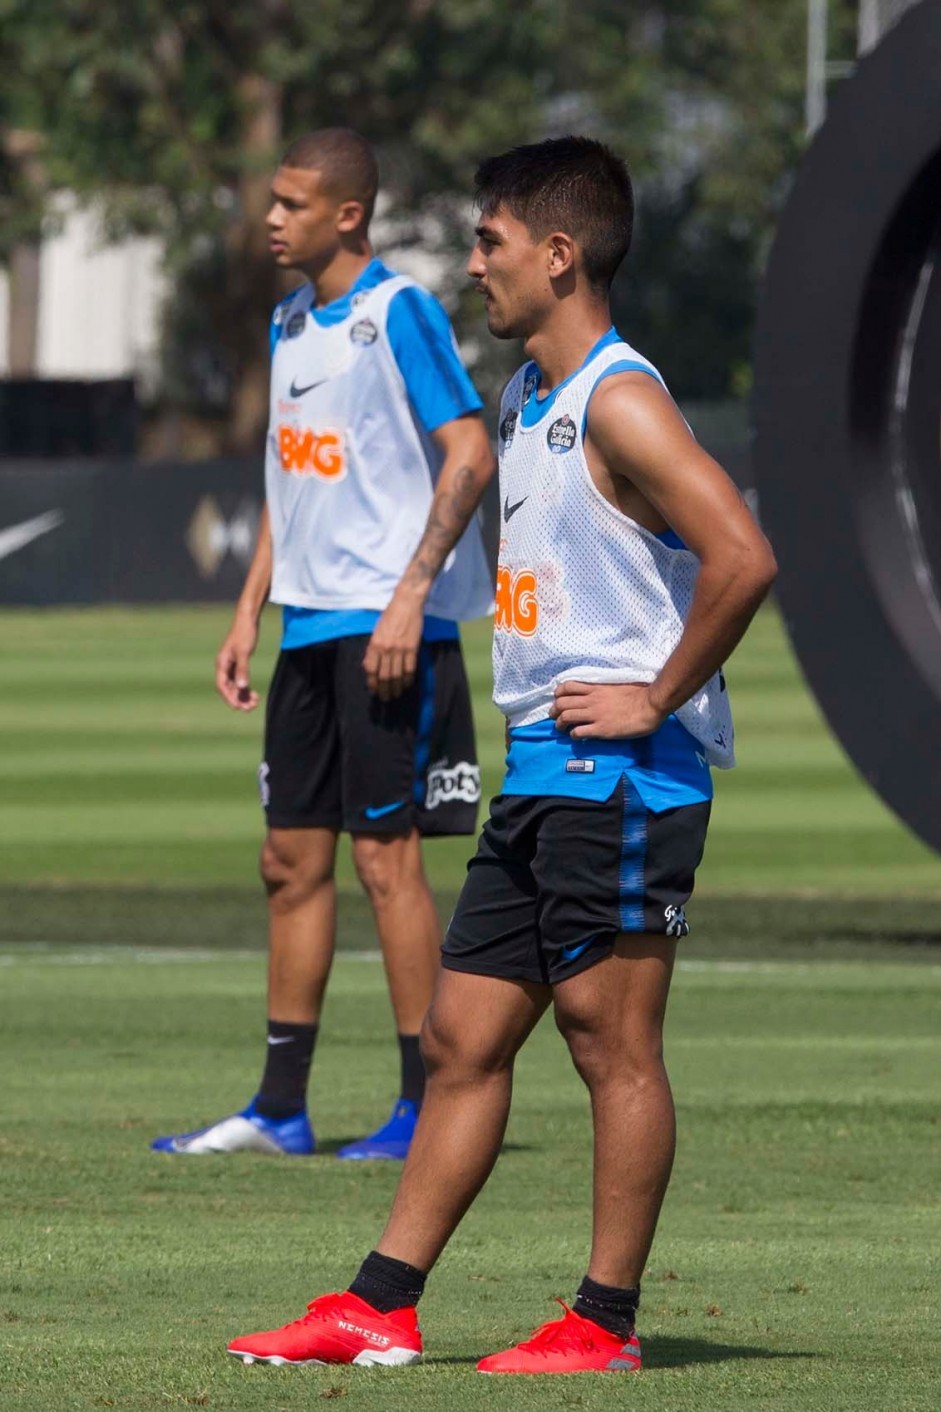 Oya e Joo Victor durante o ltimo treino do Corinthians antes de enfrentar a Chapecoense